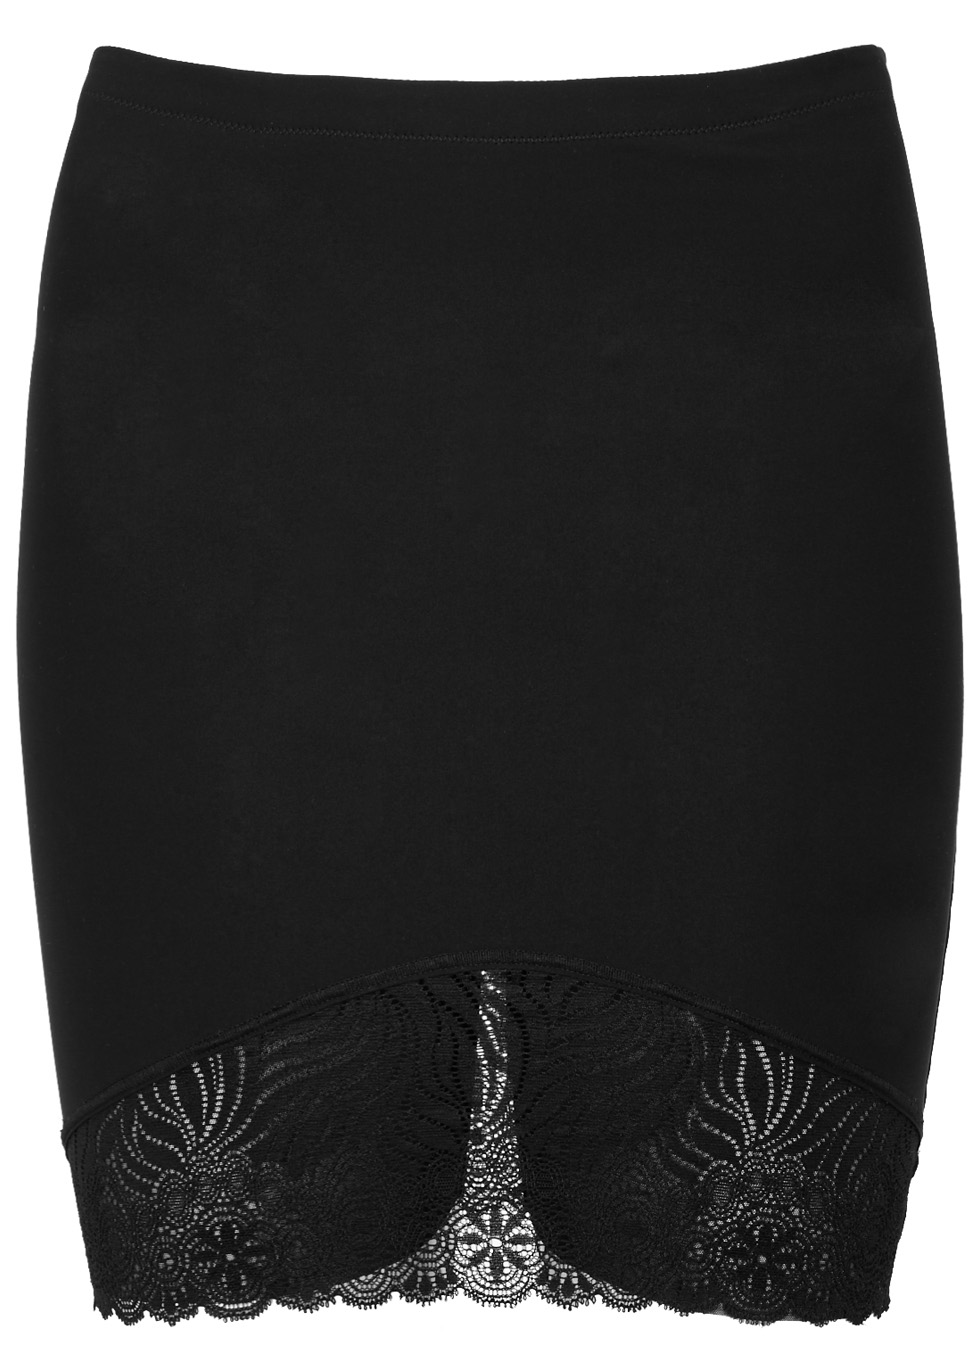 Top Model black shaping skirt